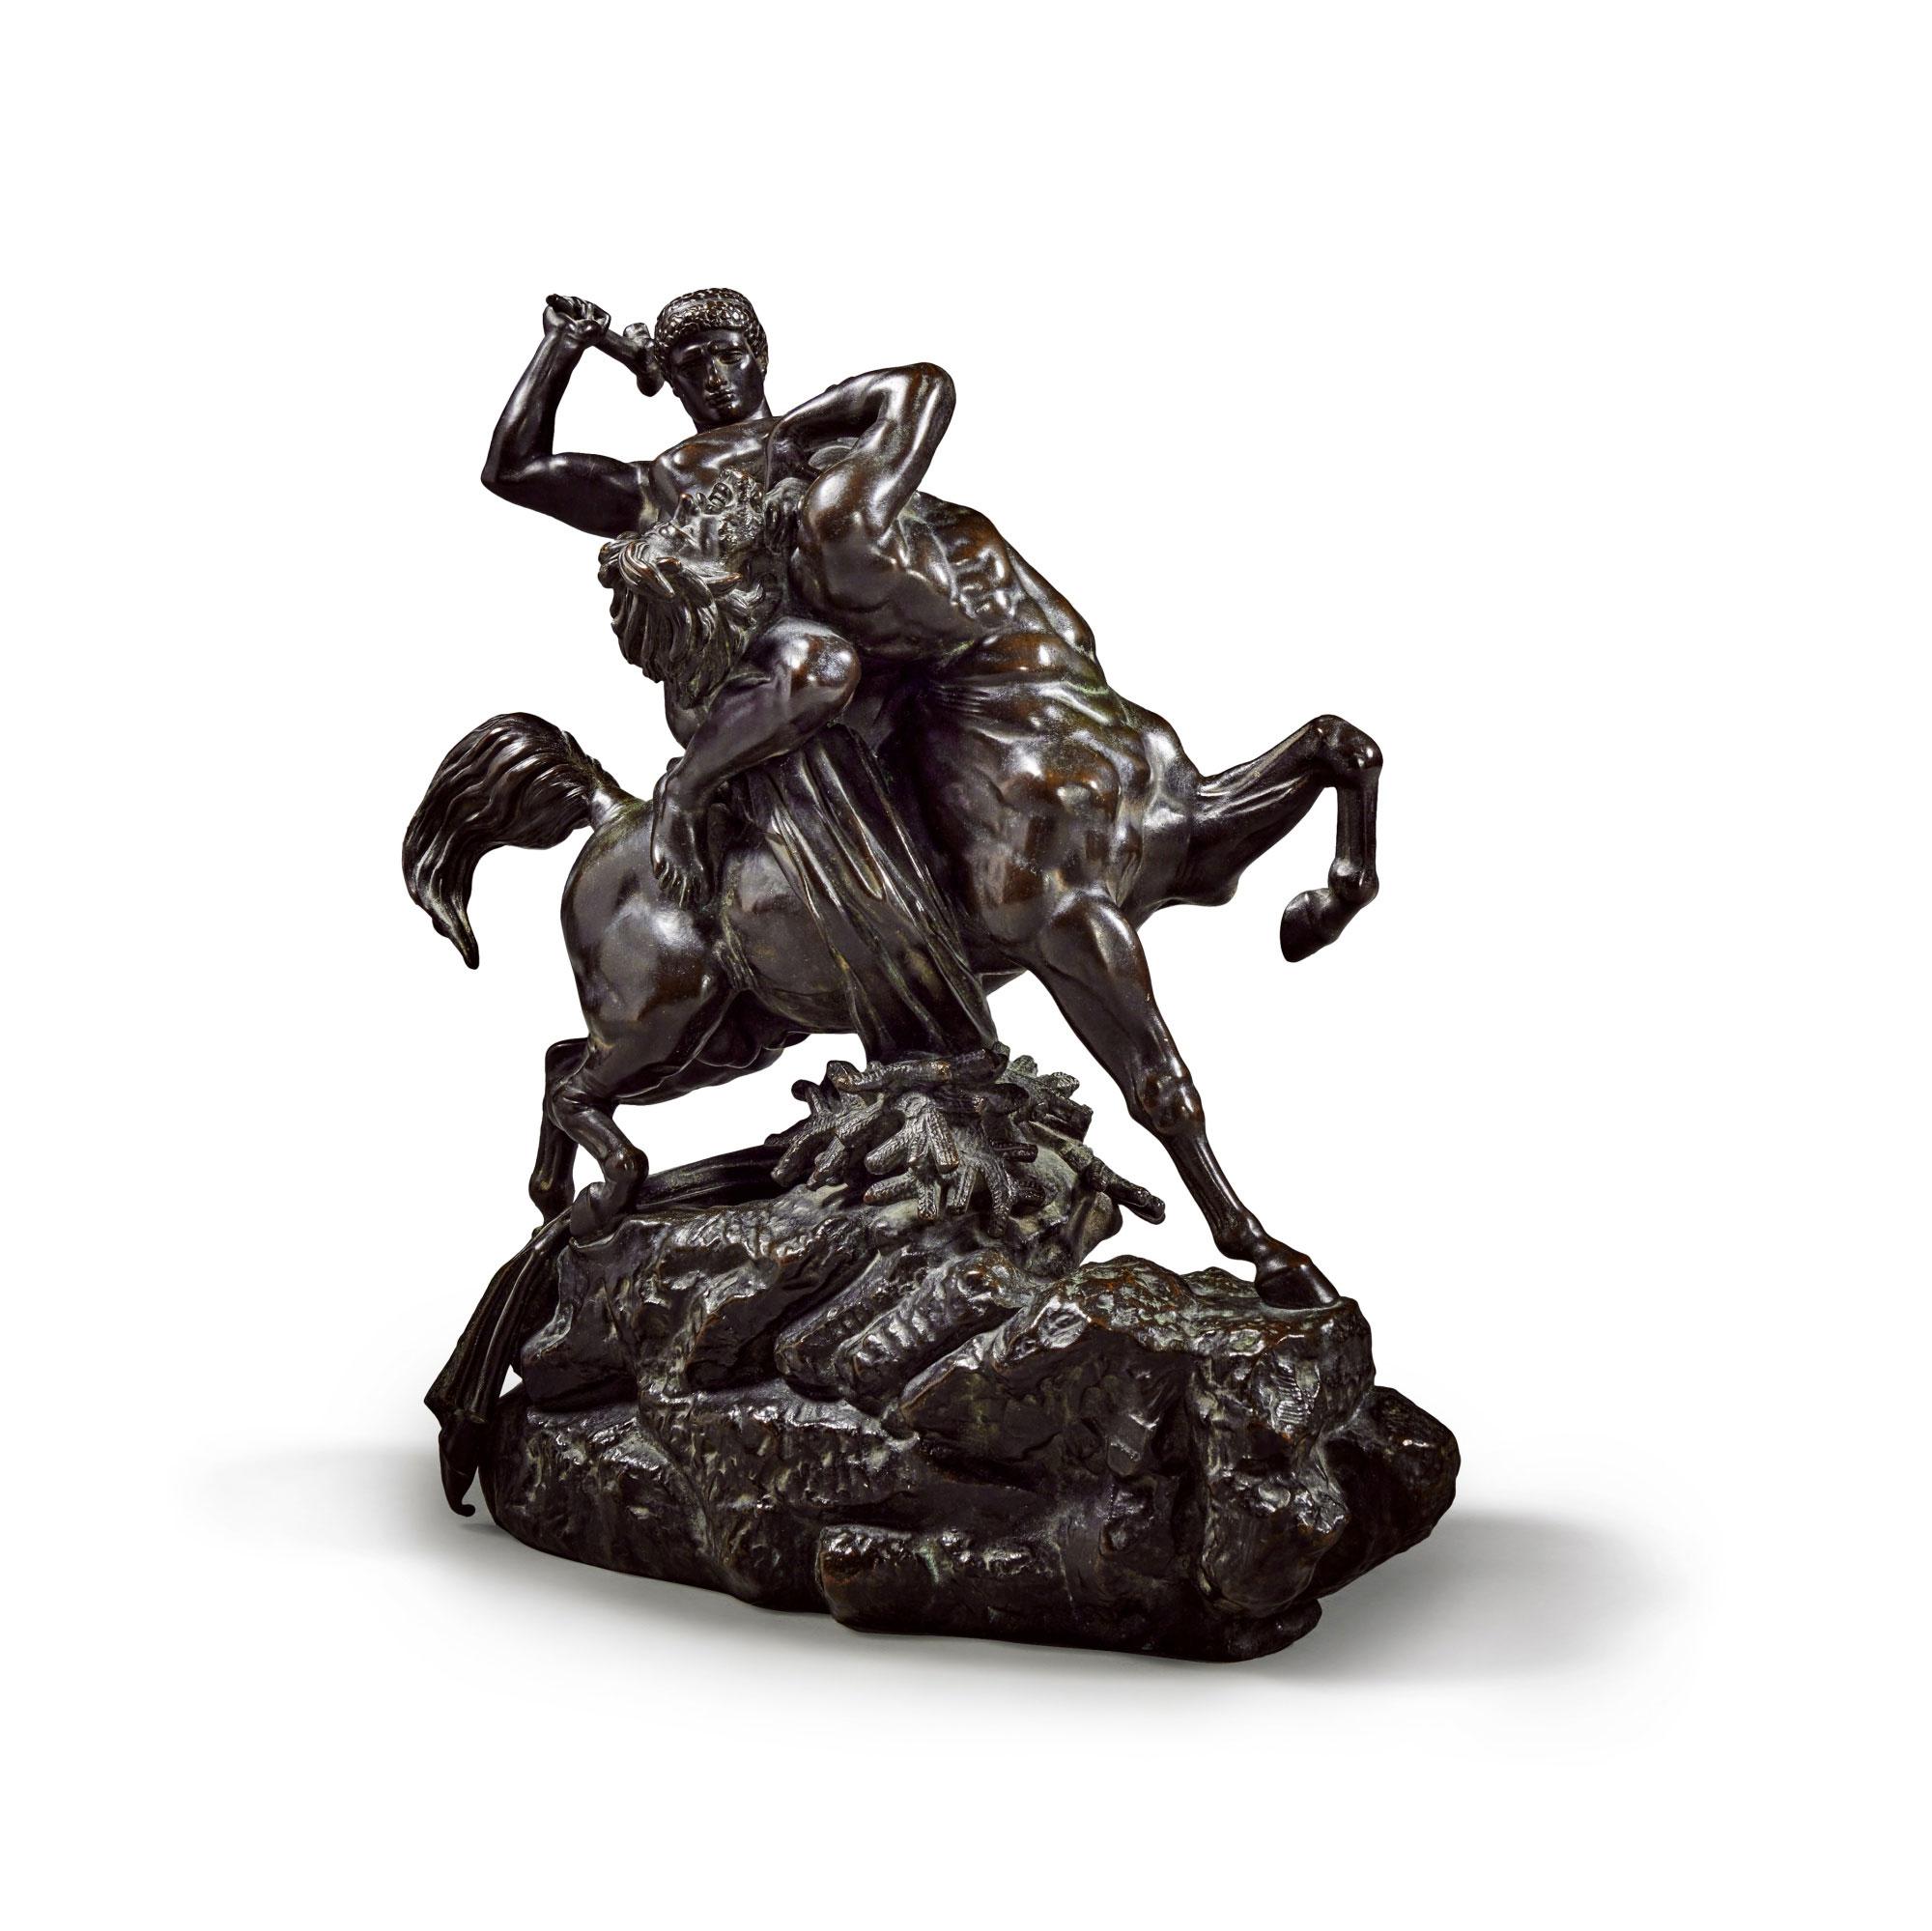 Sculpture magnifiquement dynamique représentant Thésée et le Centaure en plein combat. Thésée a monté le centaure qu'il tente de frapper avec un grand bâton. Thésée tord le cou au Centaure pour lui faire face, tandis que les longs cheveux et la